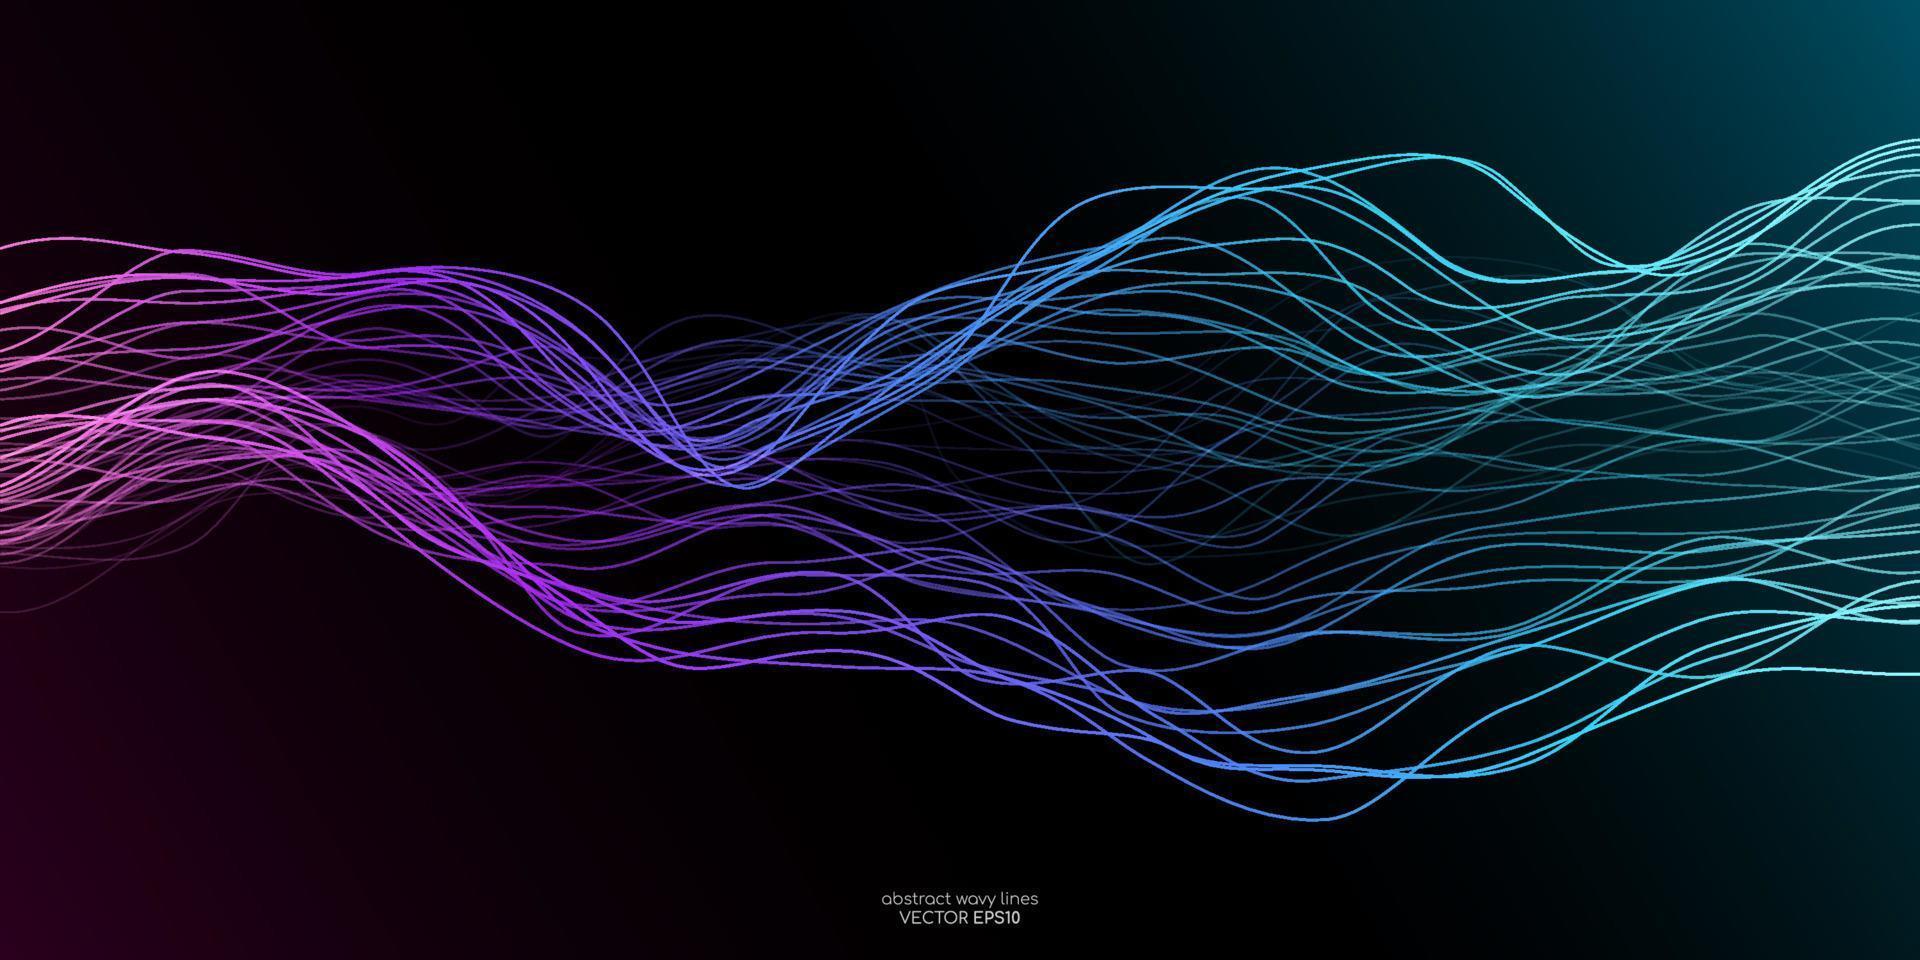 vektorvåglinjer flyter dynamiskt i färgglad lila blågrön isolerad på svart bakgrund för begreppet ai-teknik, digital, kommunikation, vetenskap, musik vektor